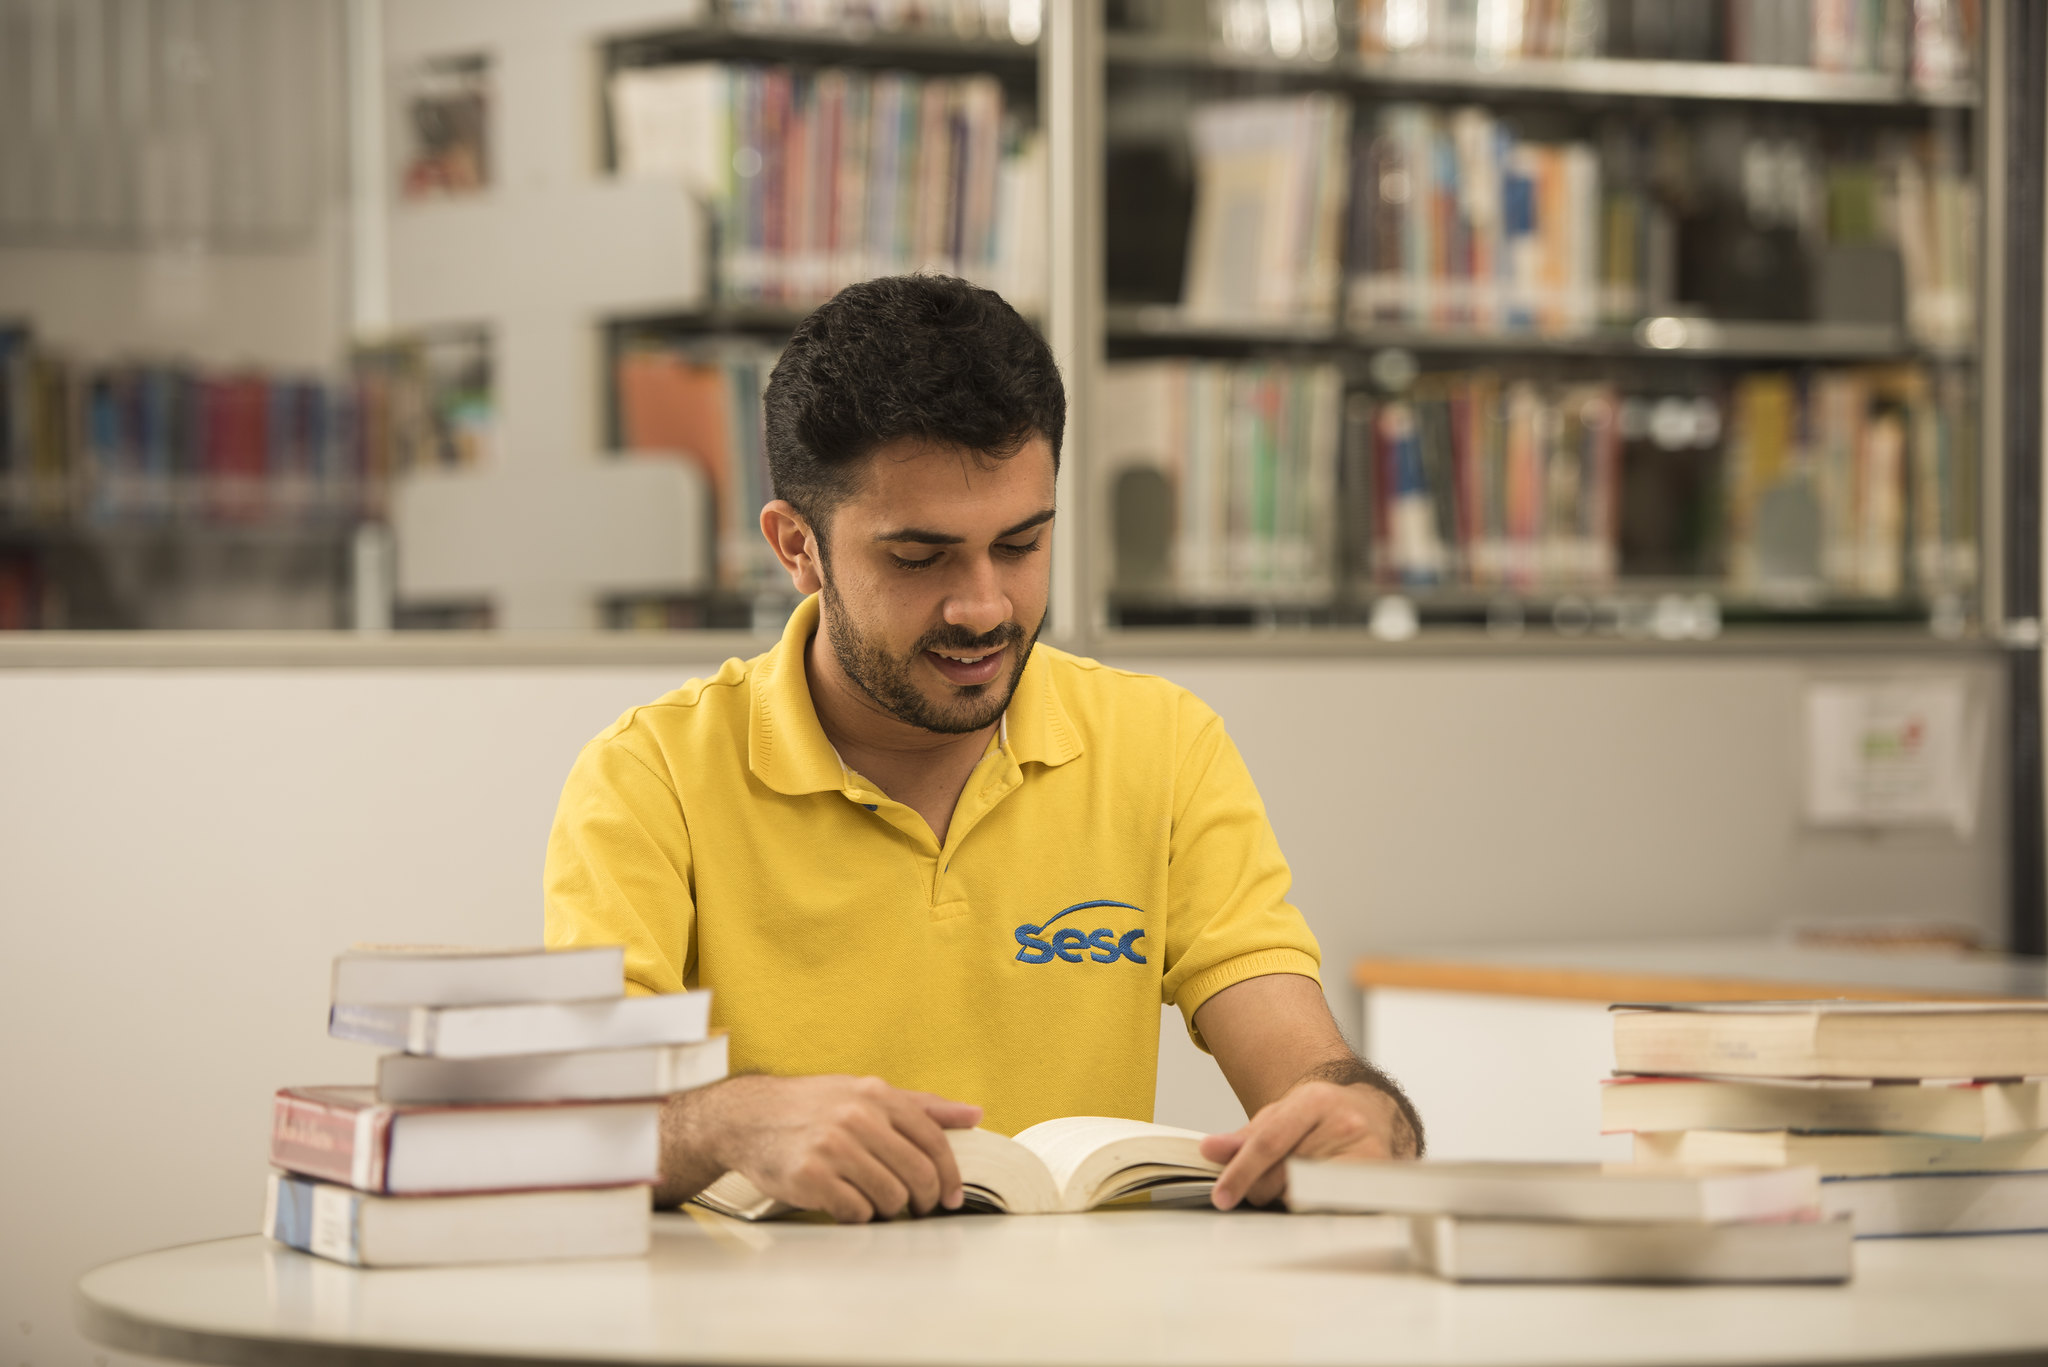 Na imagem, um homem está sentado em frente a uma mesa cheia de livros, lendo um exemplar. Ele possui cabelo e barba curtos e pretos e usa uma camisa amarela onde se lê o nome "Sesc", escrito em azul.